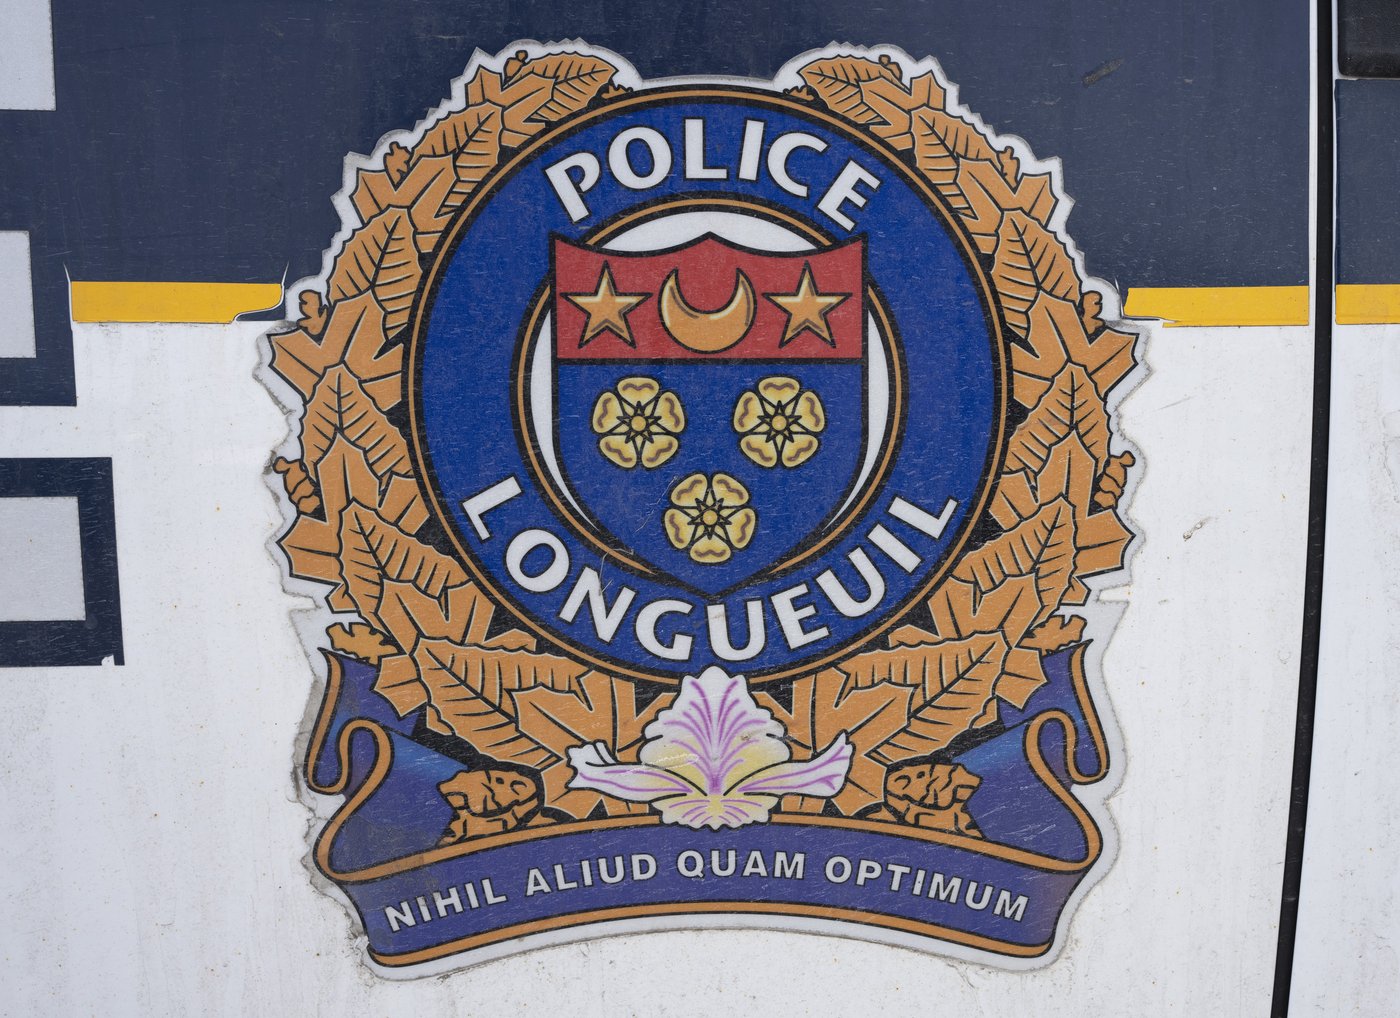 La police mène des perquisitions en matière de stupéfiants à Brossard et Montréal